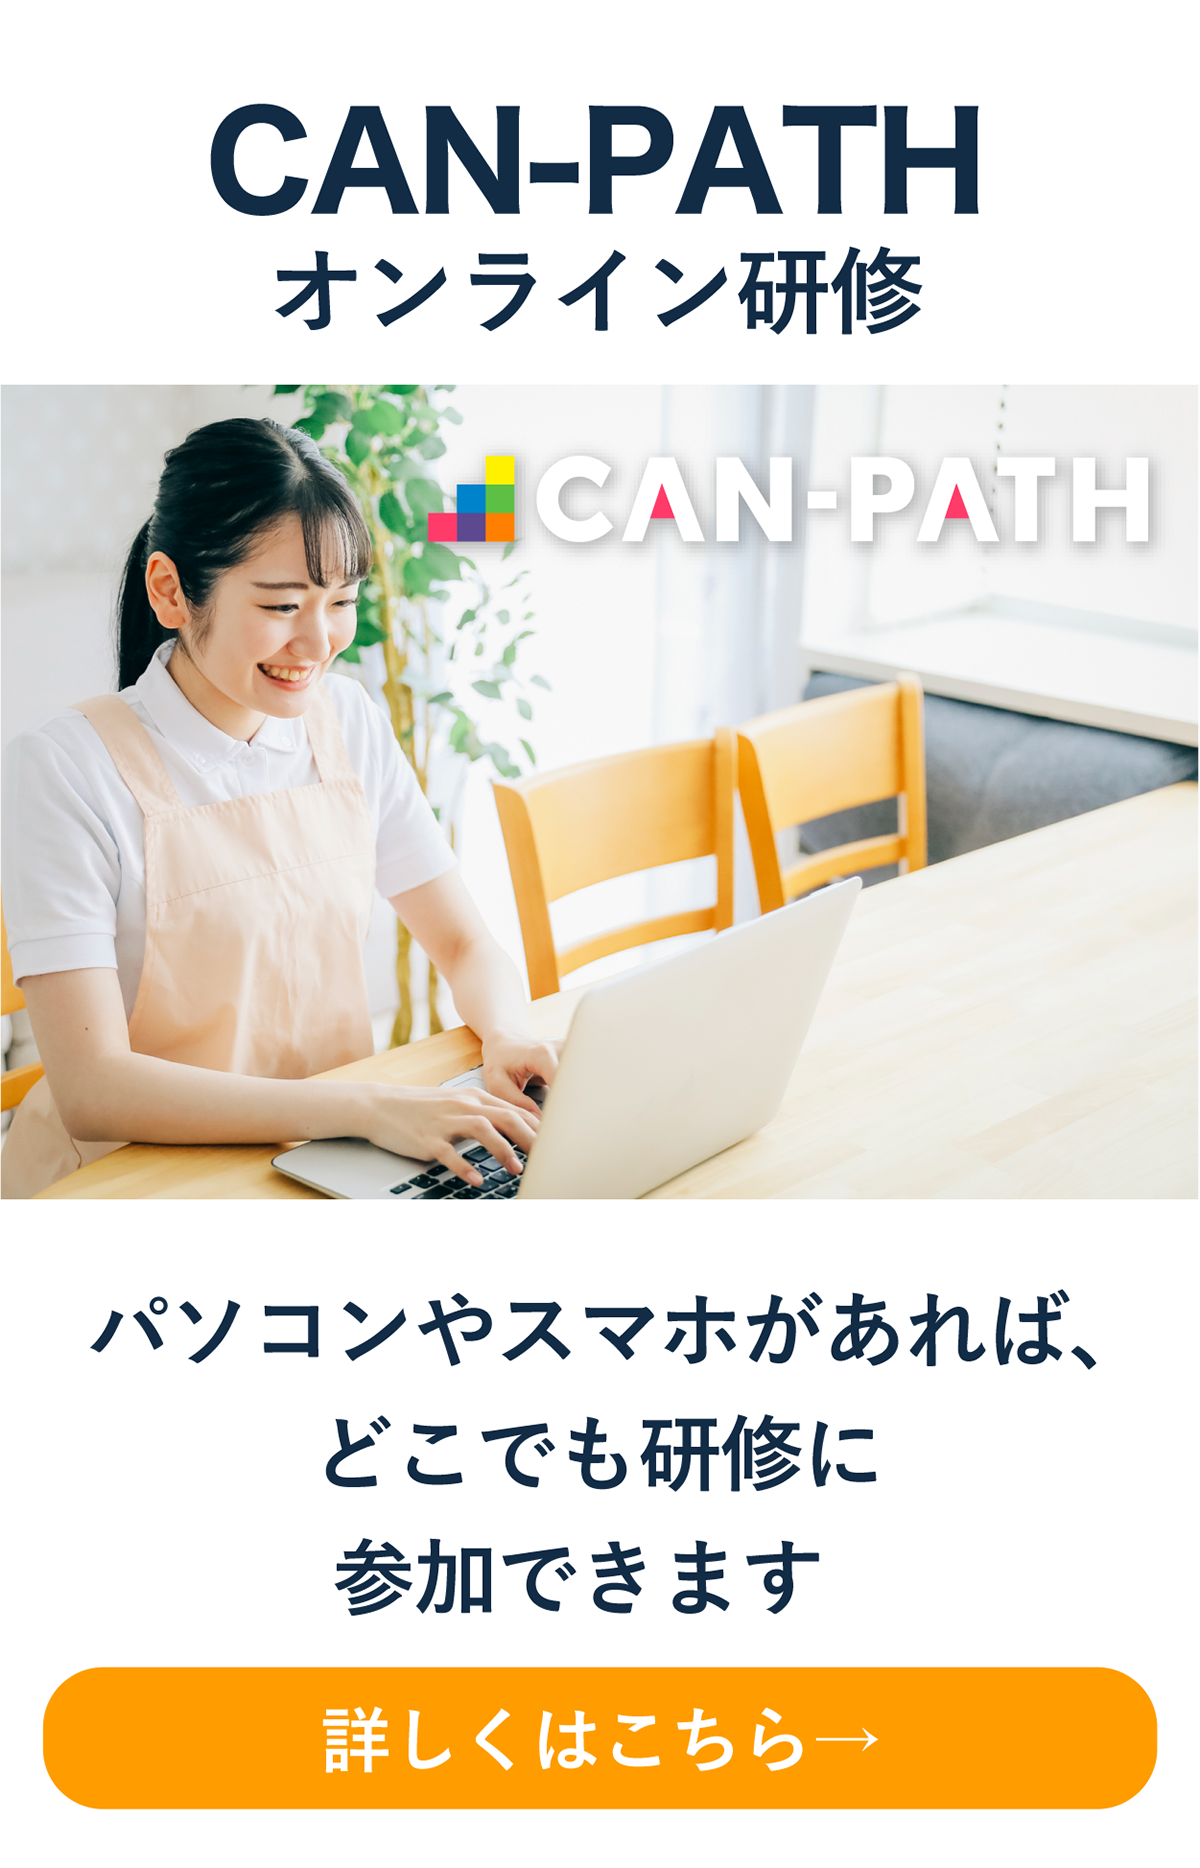 CAN-PATH（キャンパス）オンライン研修
パソコンやスマホがあればどこでも研修に参加できます